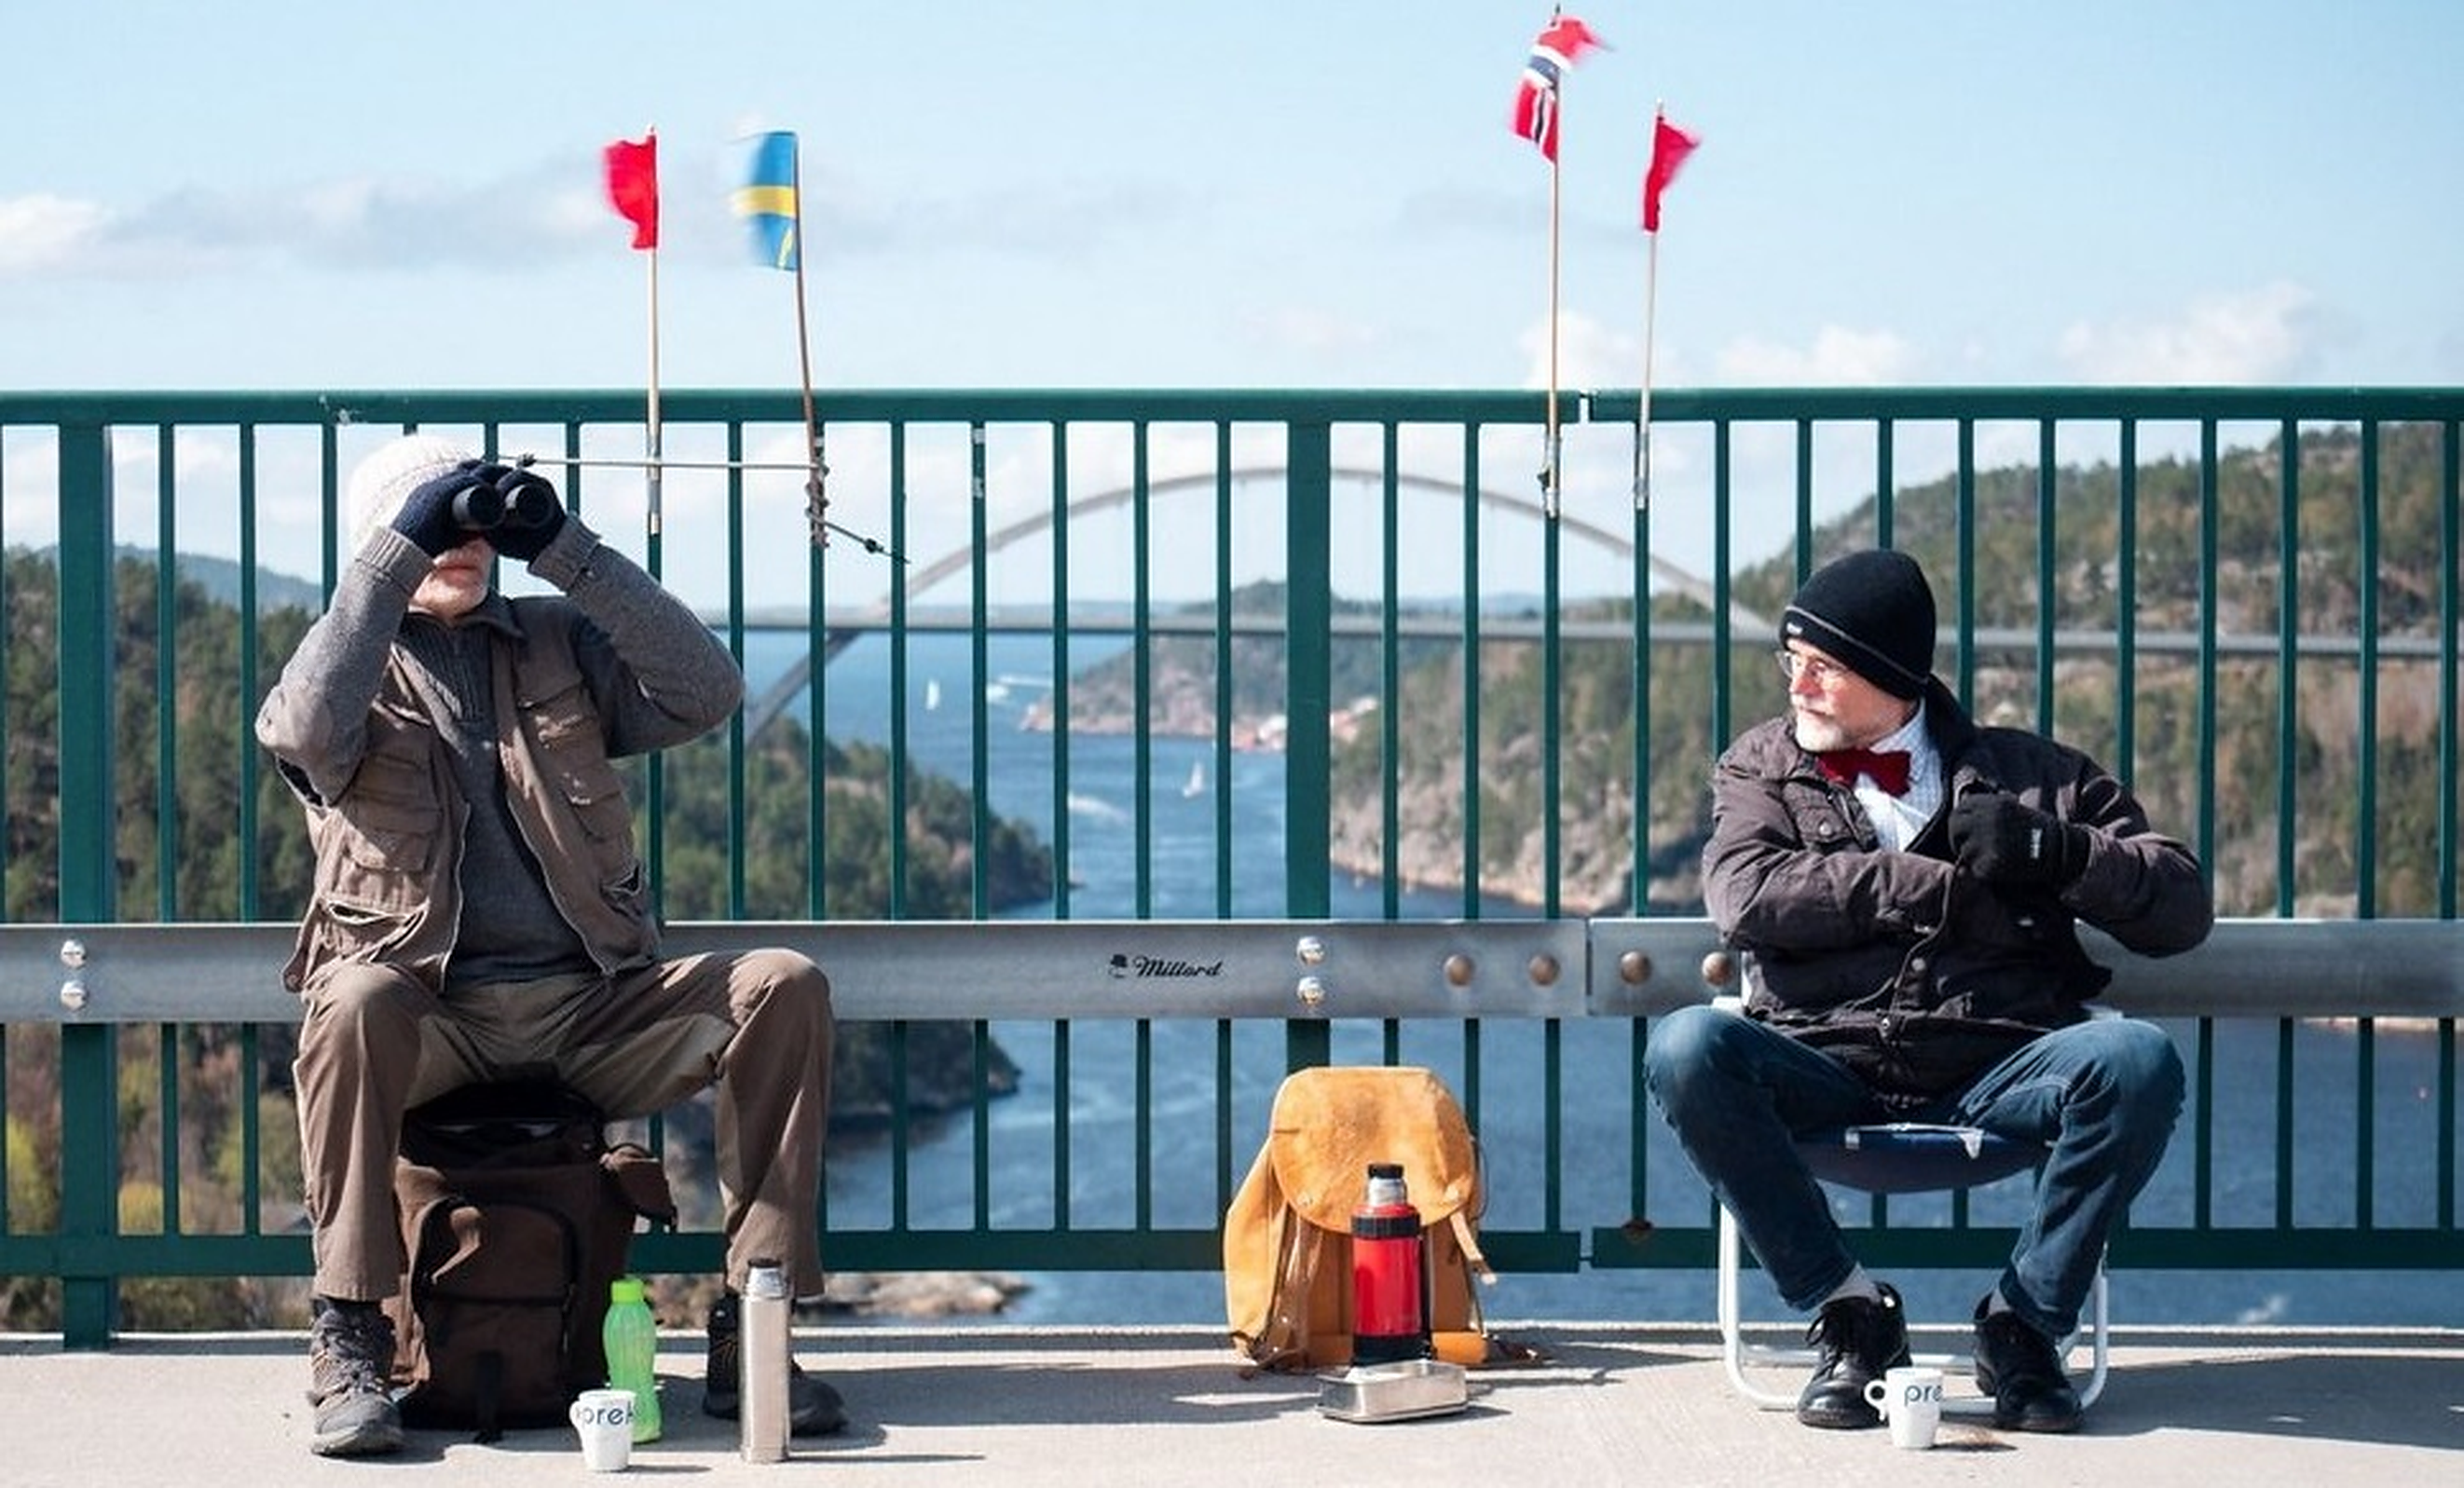 Gemenii despărțiți de Covid. În fiecare weekend se întâlnesc la frontiera norvegiano-suedeză și își vorbesc de la 2 metri distanță